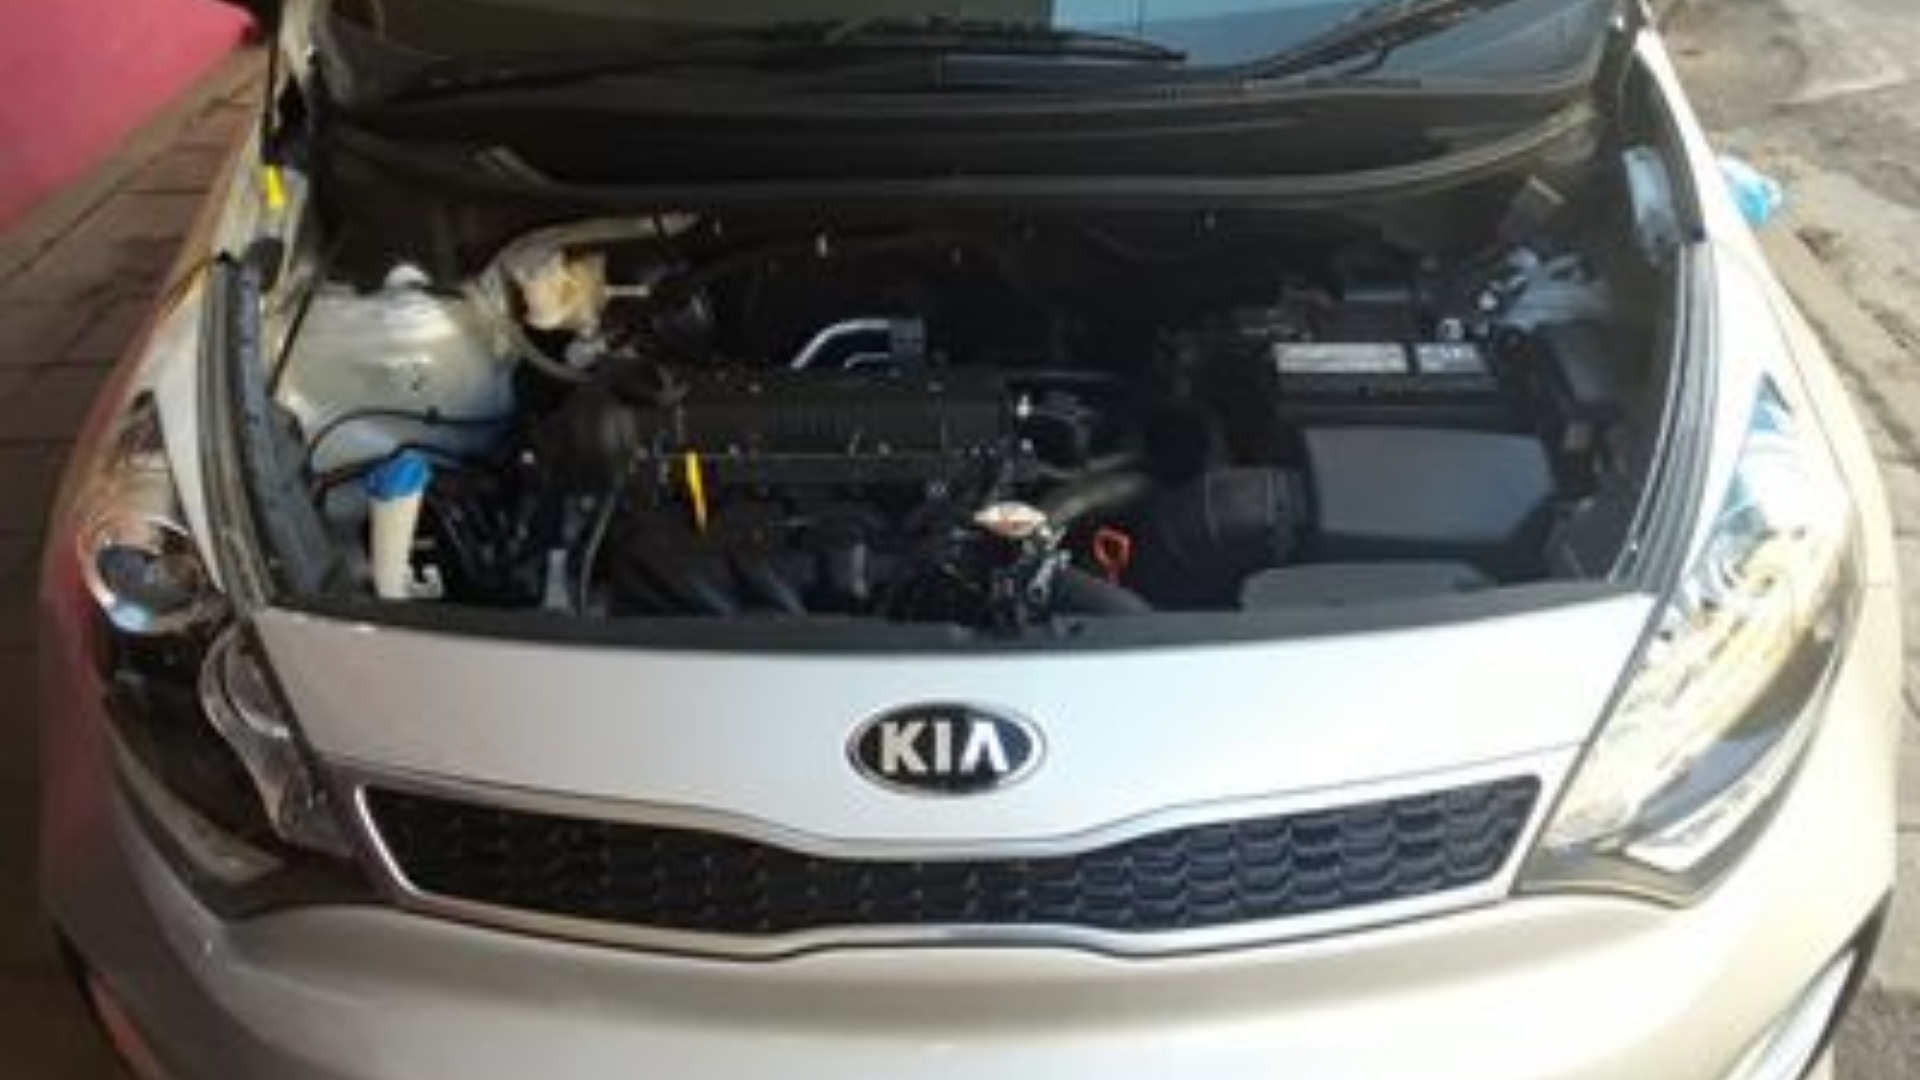 Kia Rio Hatch RIO 1.4 TEC A/T 5DR for sale in Gauteng | Auto Mart